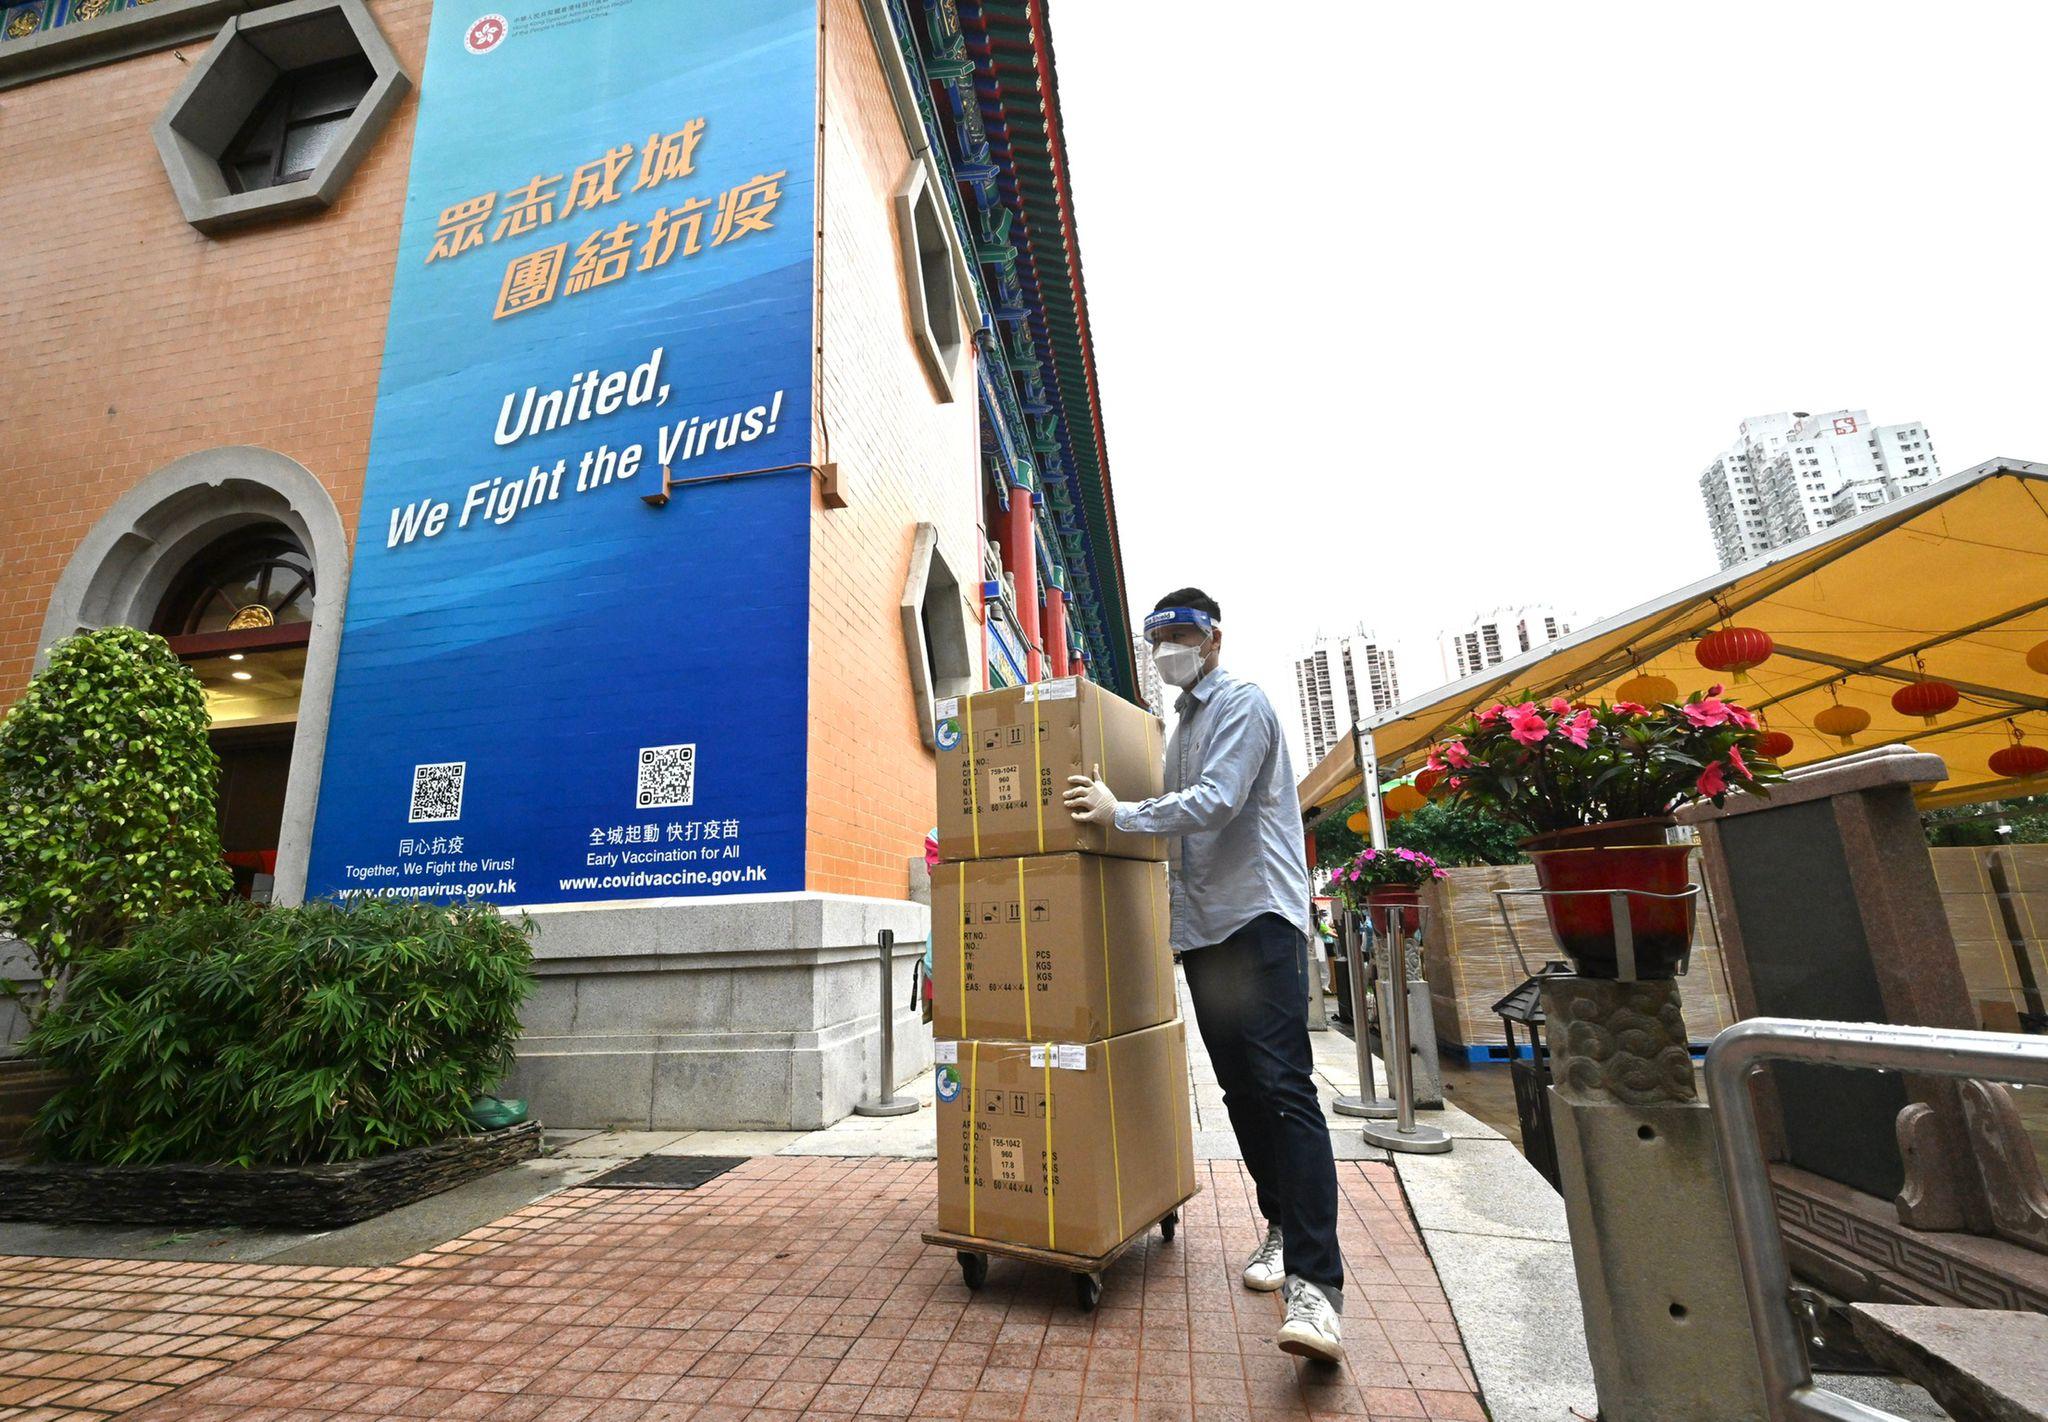 香港特別行政區政府正全力籌備「防疫服務包」的包裝和派發準備工作。圖示防疫抗疫物資送抵發放點。

